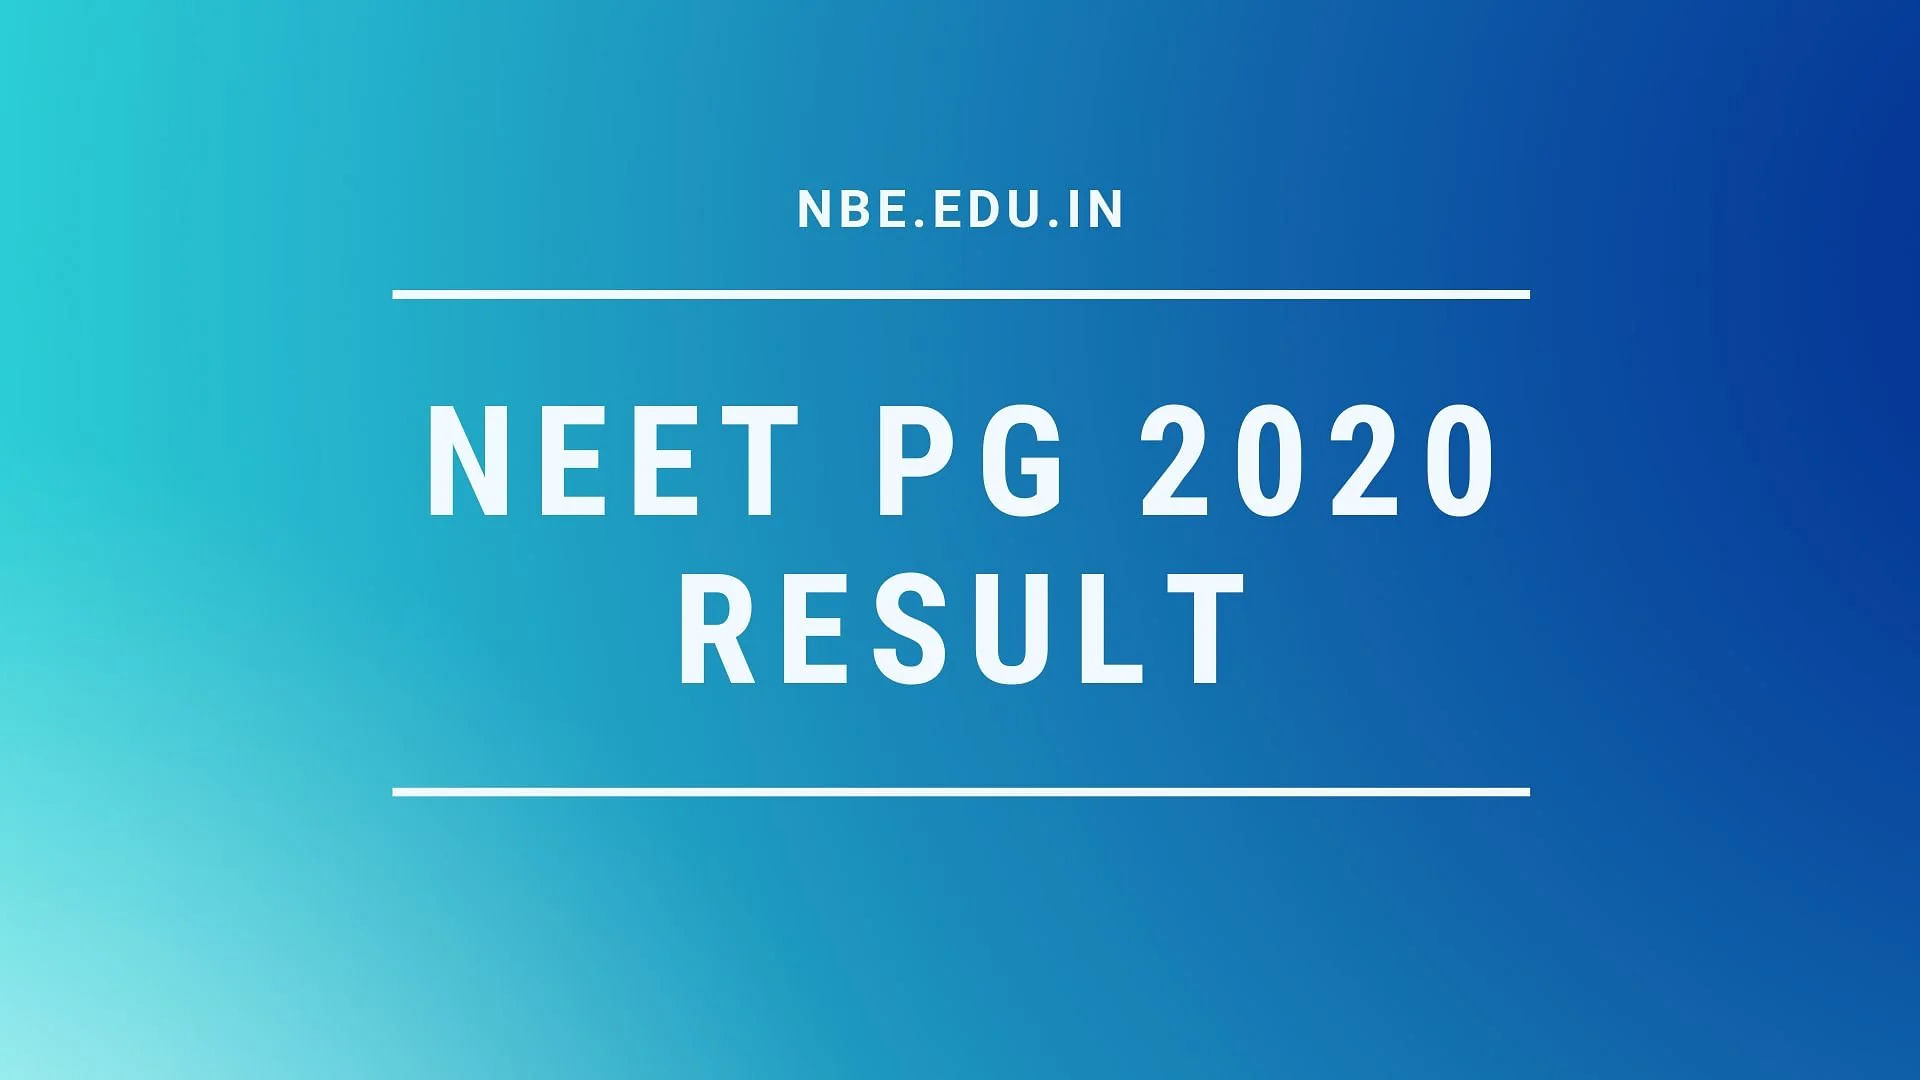 NEET PG 2020 Result has been declared on nbe.edu.in